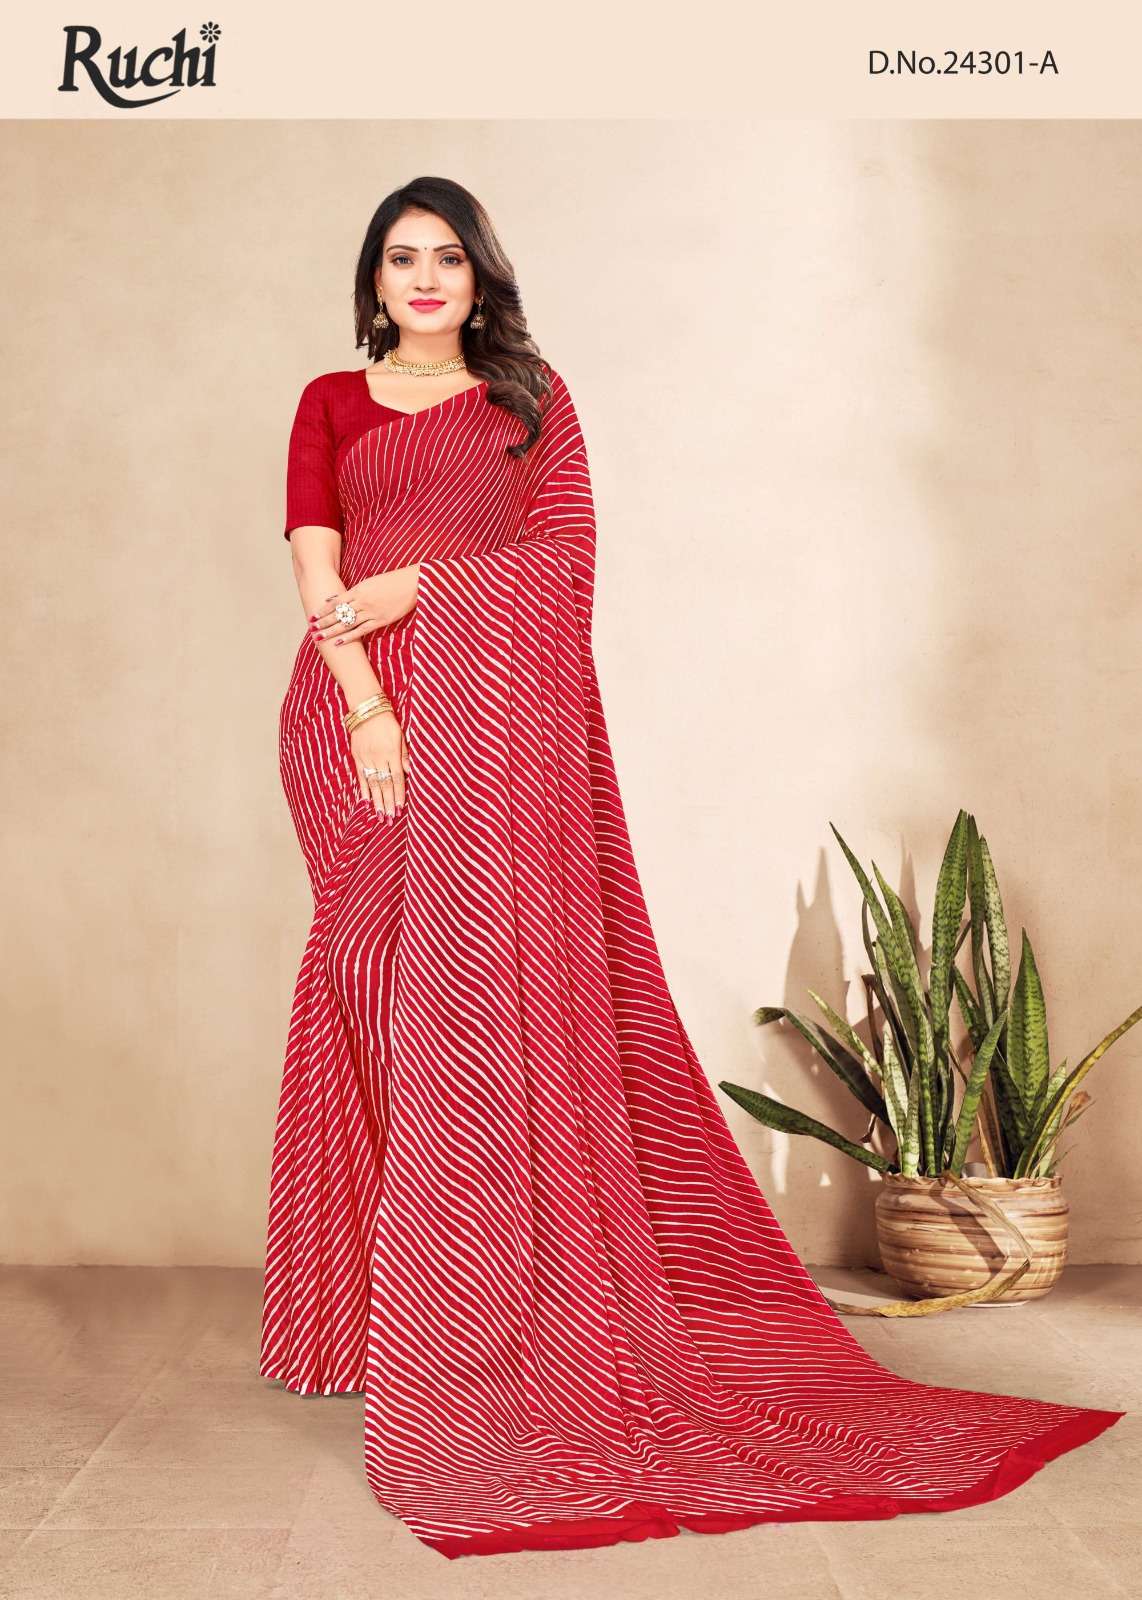 ruchi star chiffon 24301 bandhani print sarees collection